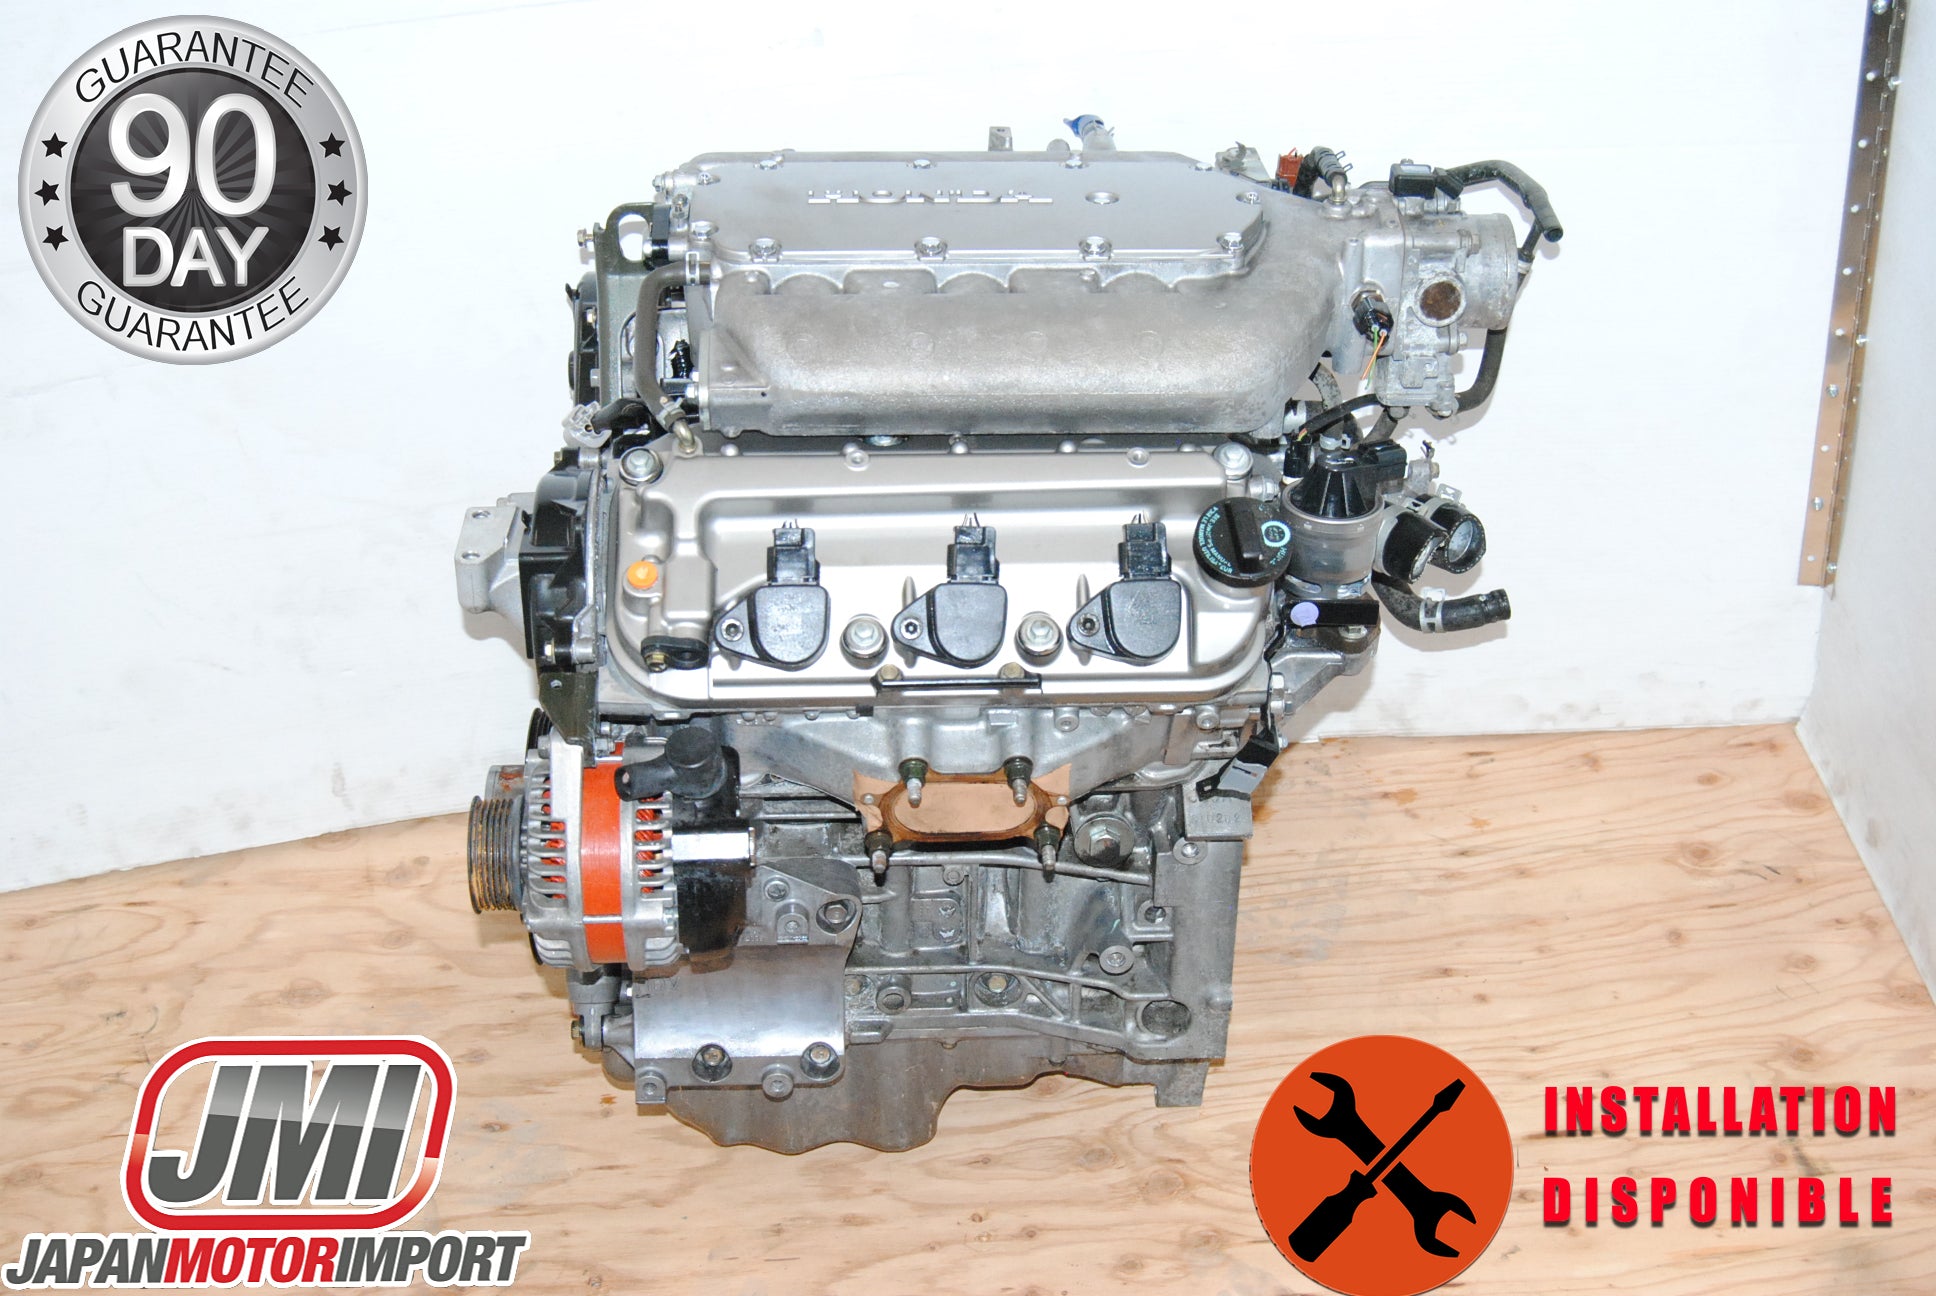 Honda Accord Engine V6 2003 2004 2005 2006 2007 J35